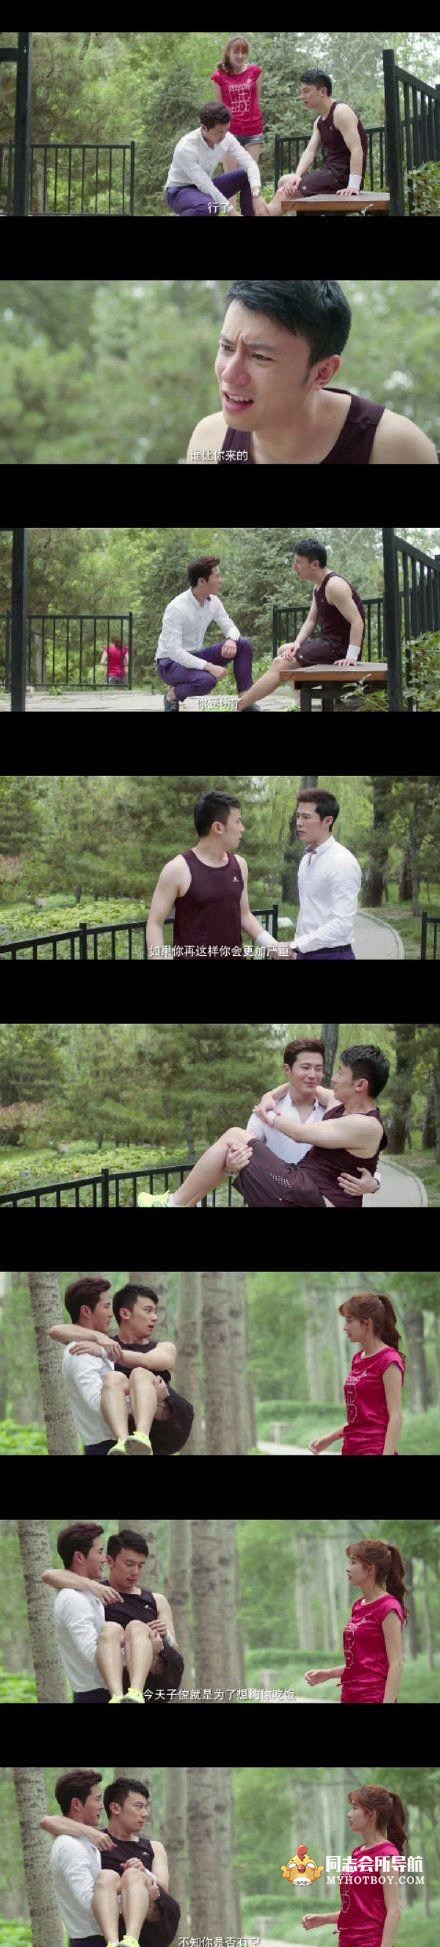 中国内地似是而非的gay电影（上）——《机器情人》 娱乐画报 第7张